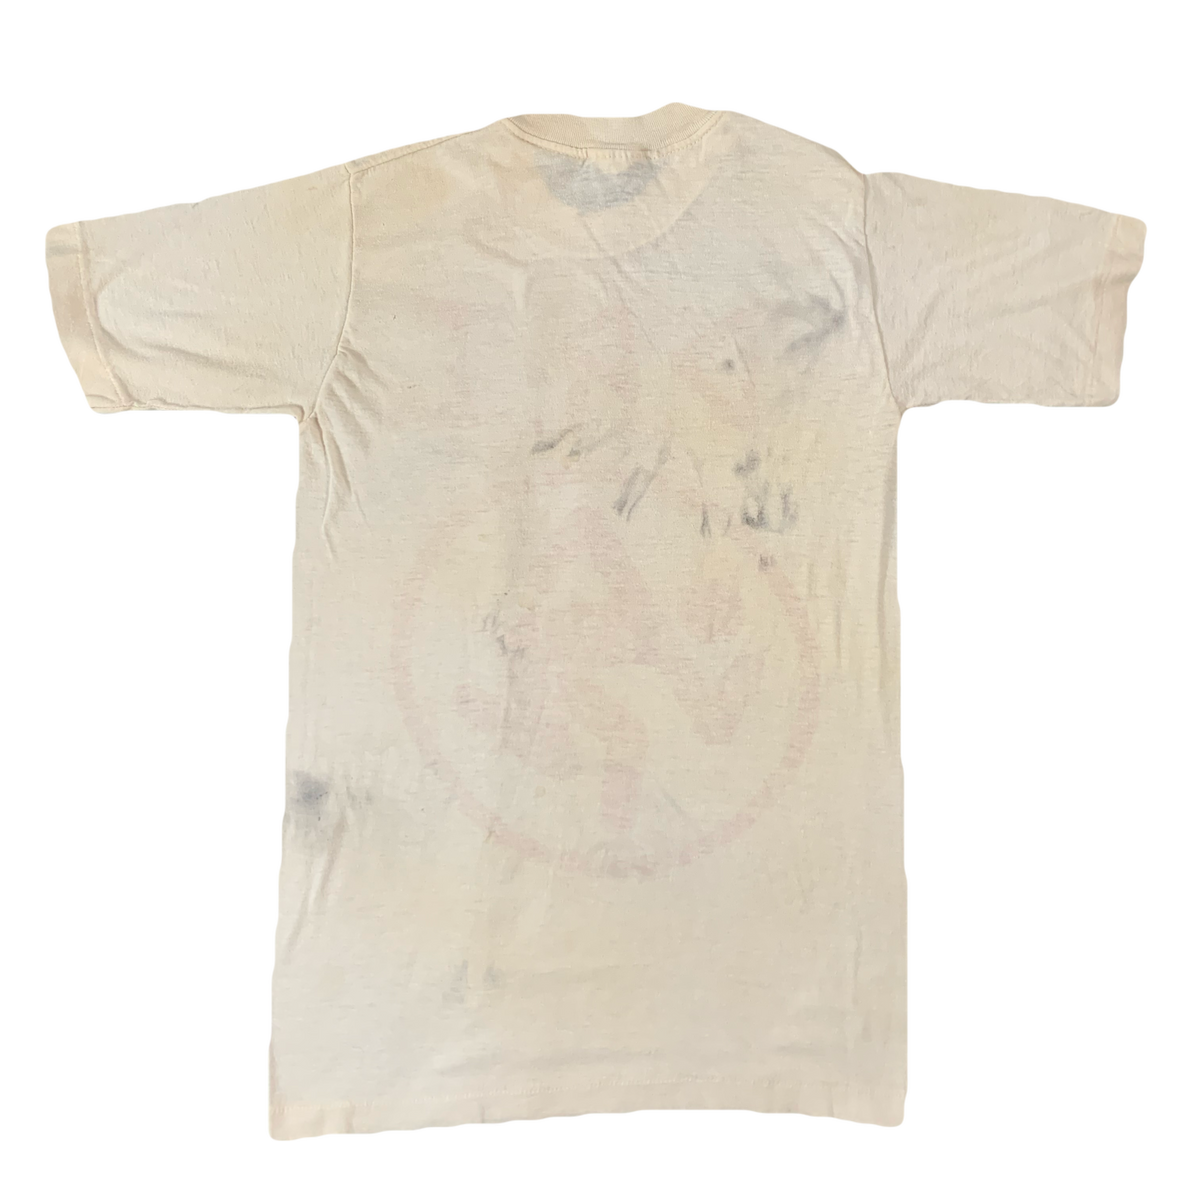 Vintage D.R.I. Skanking Man T-Shirt Back